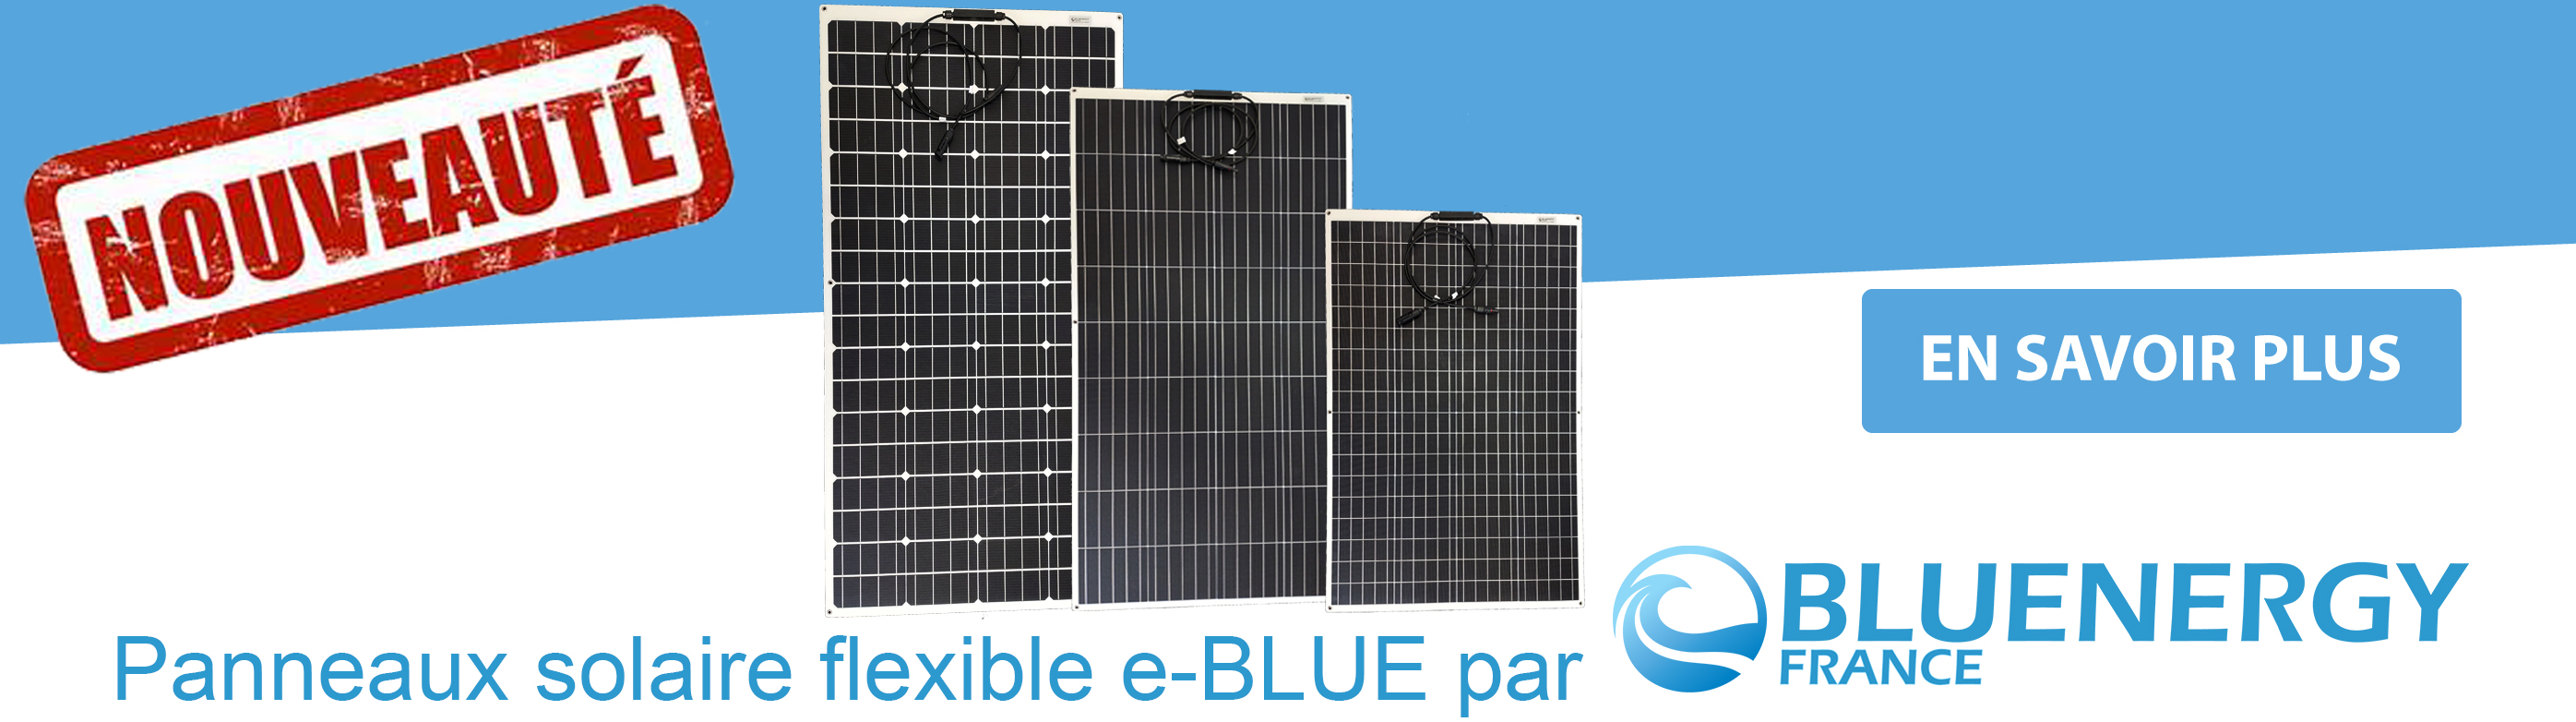 Panneau solaire e-BLUE